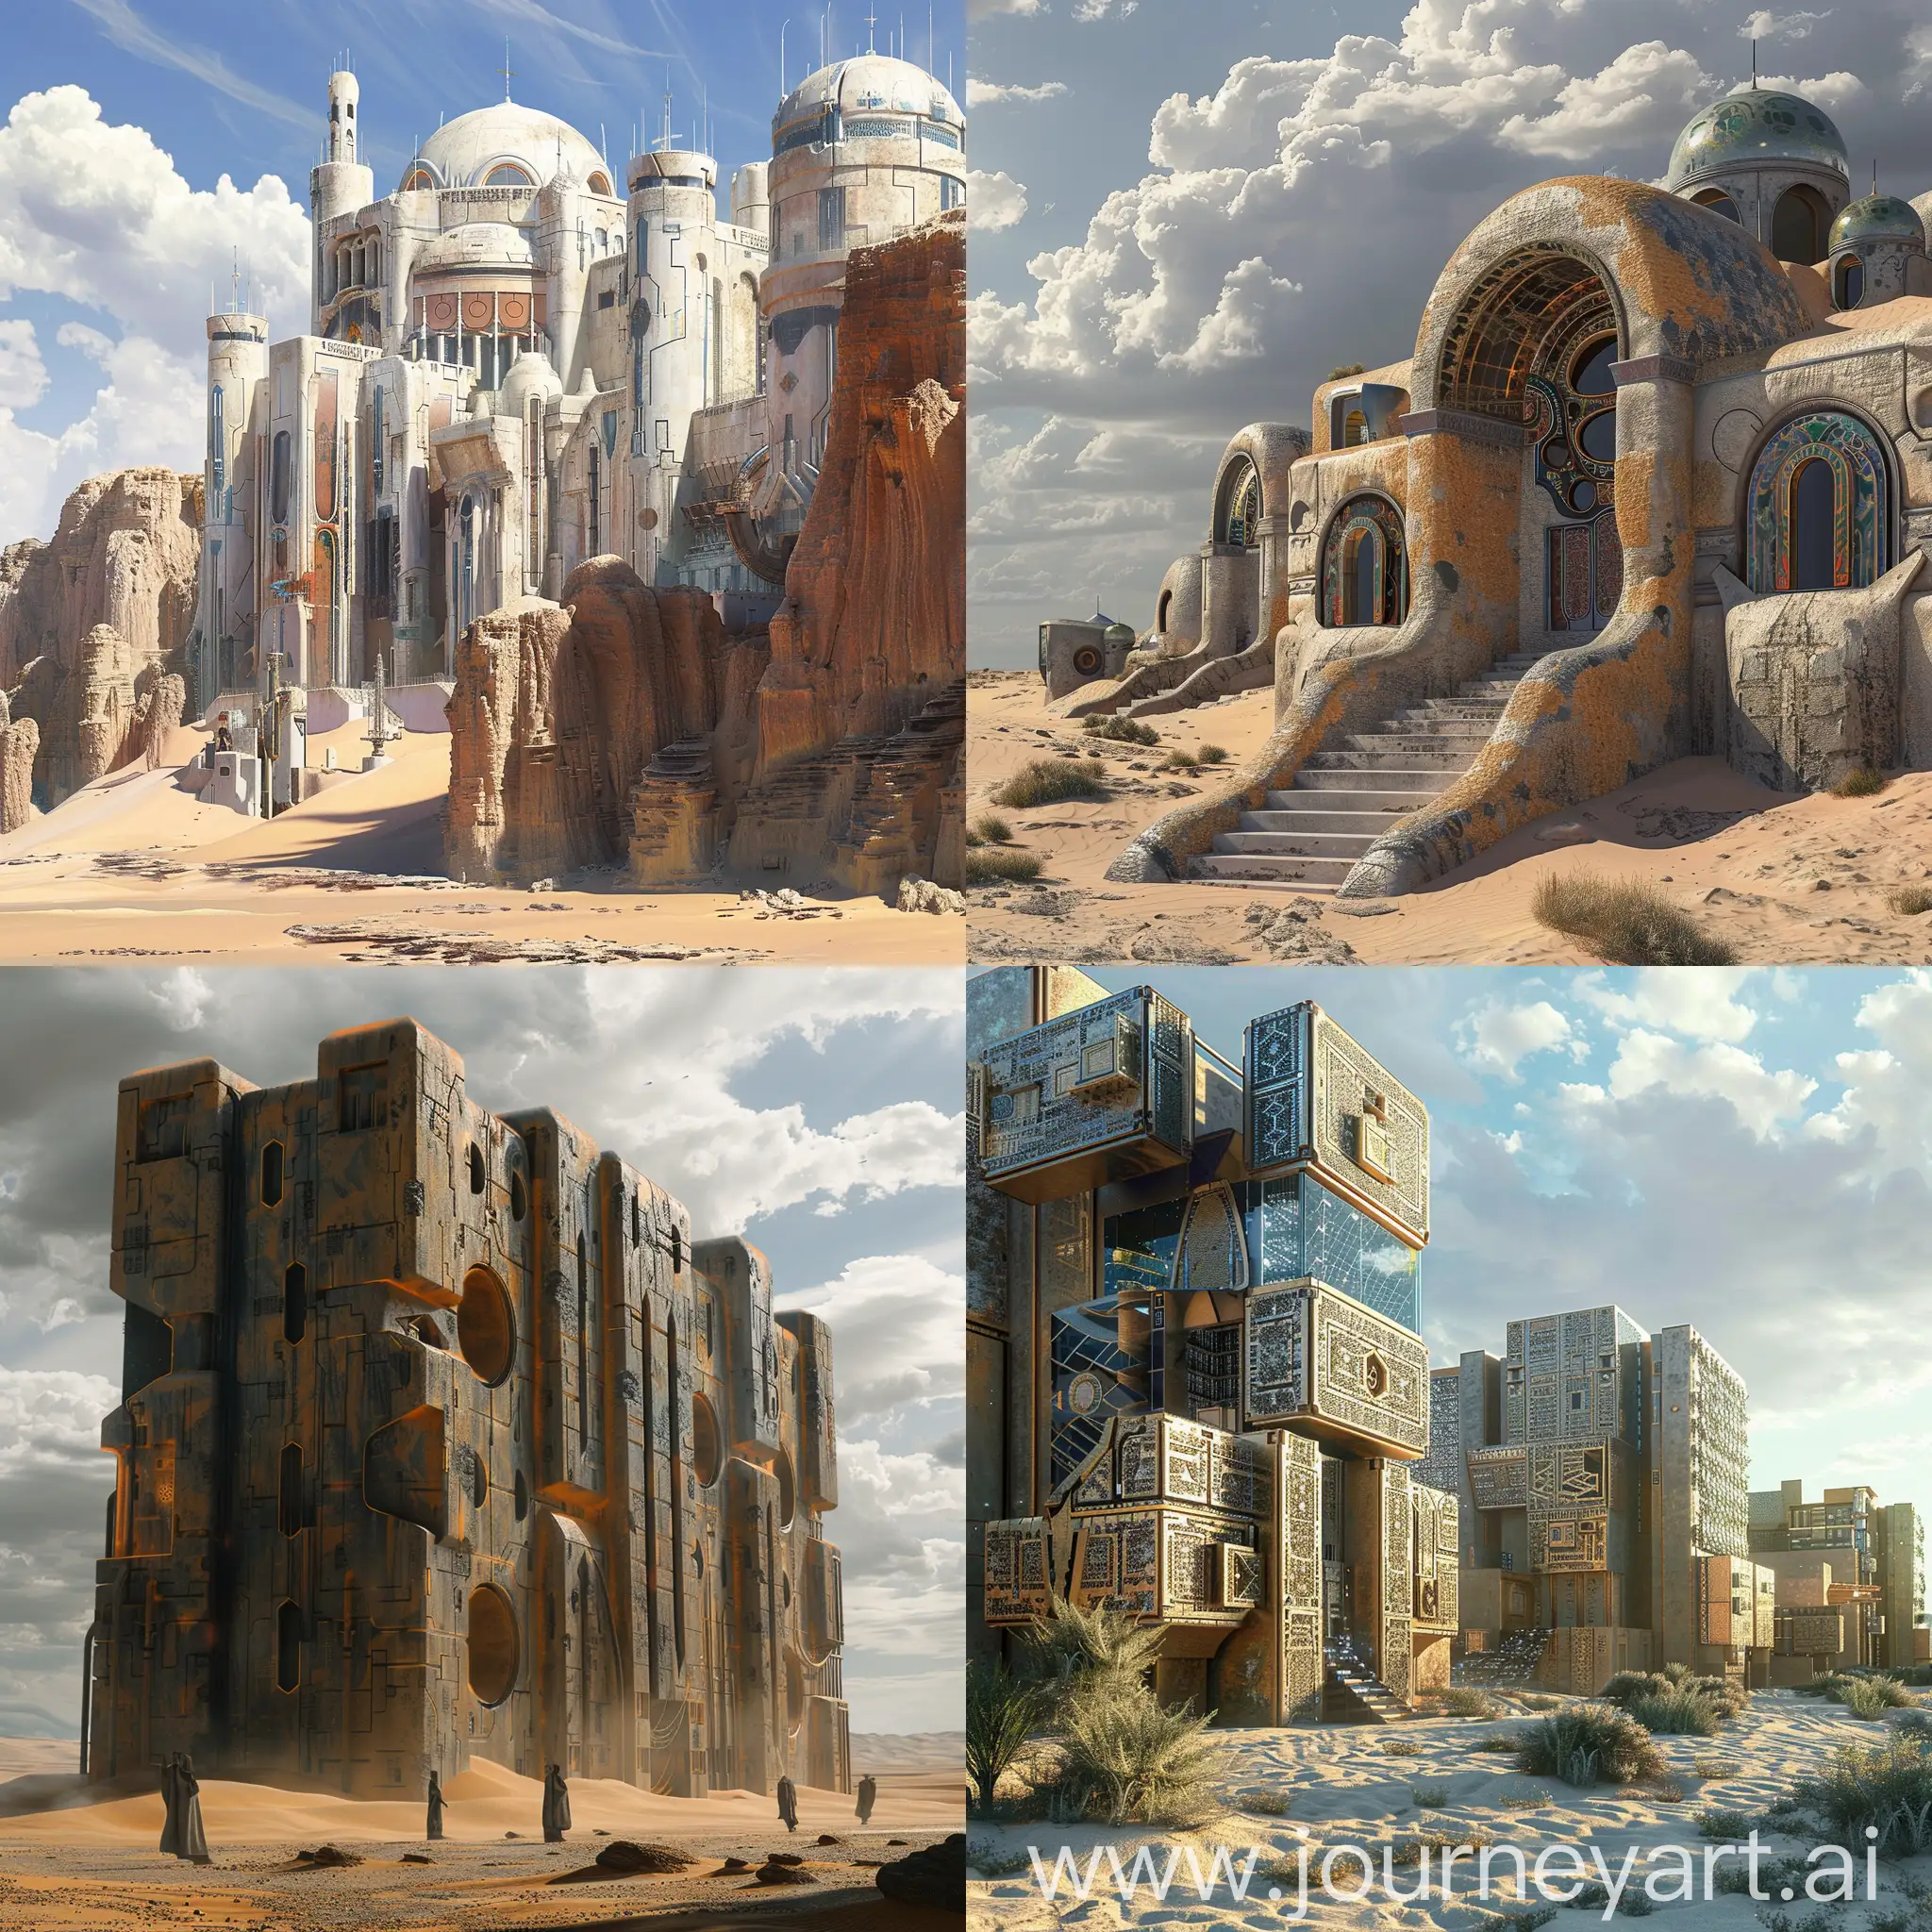 Desert-Silk-RoadInspired-SciFi-Square-Buildings